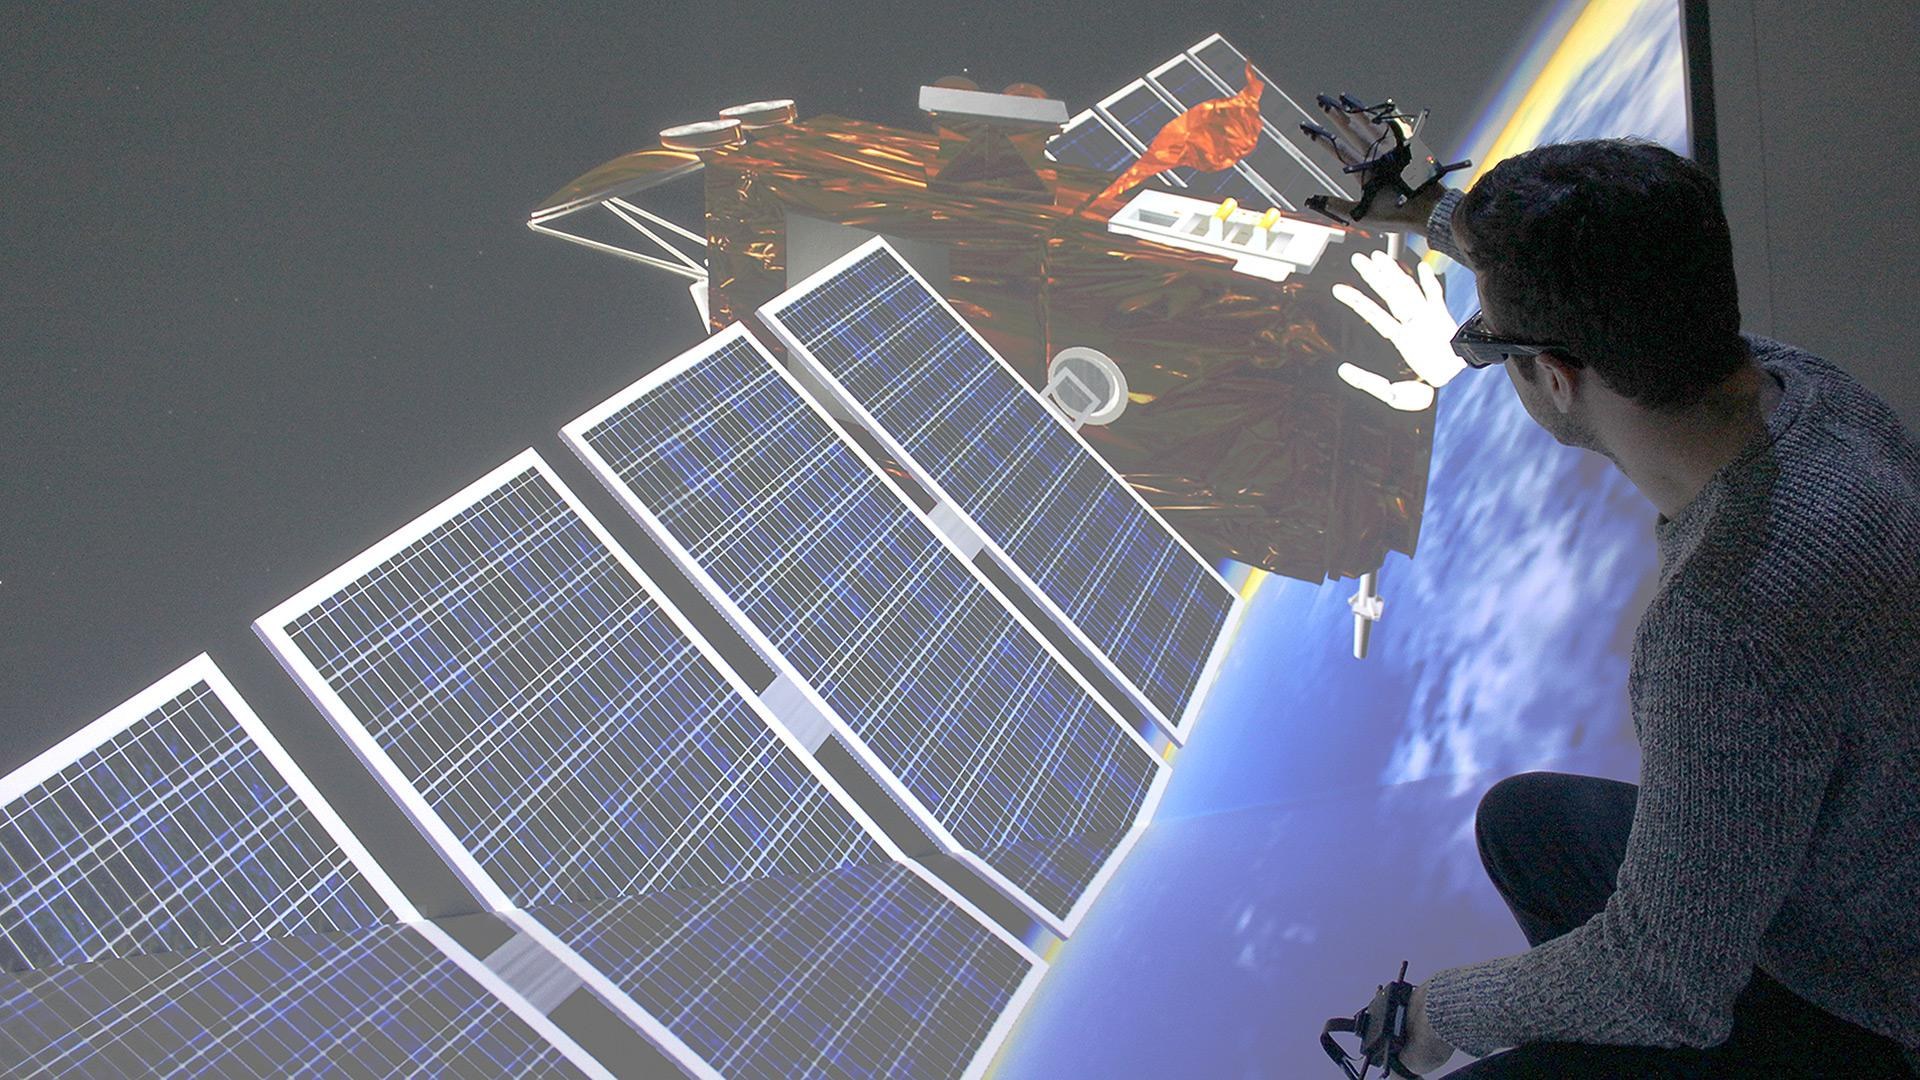 Repair of virtual satellites